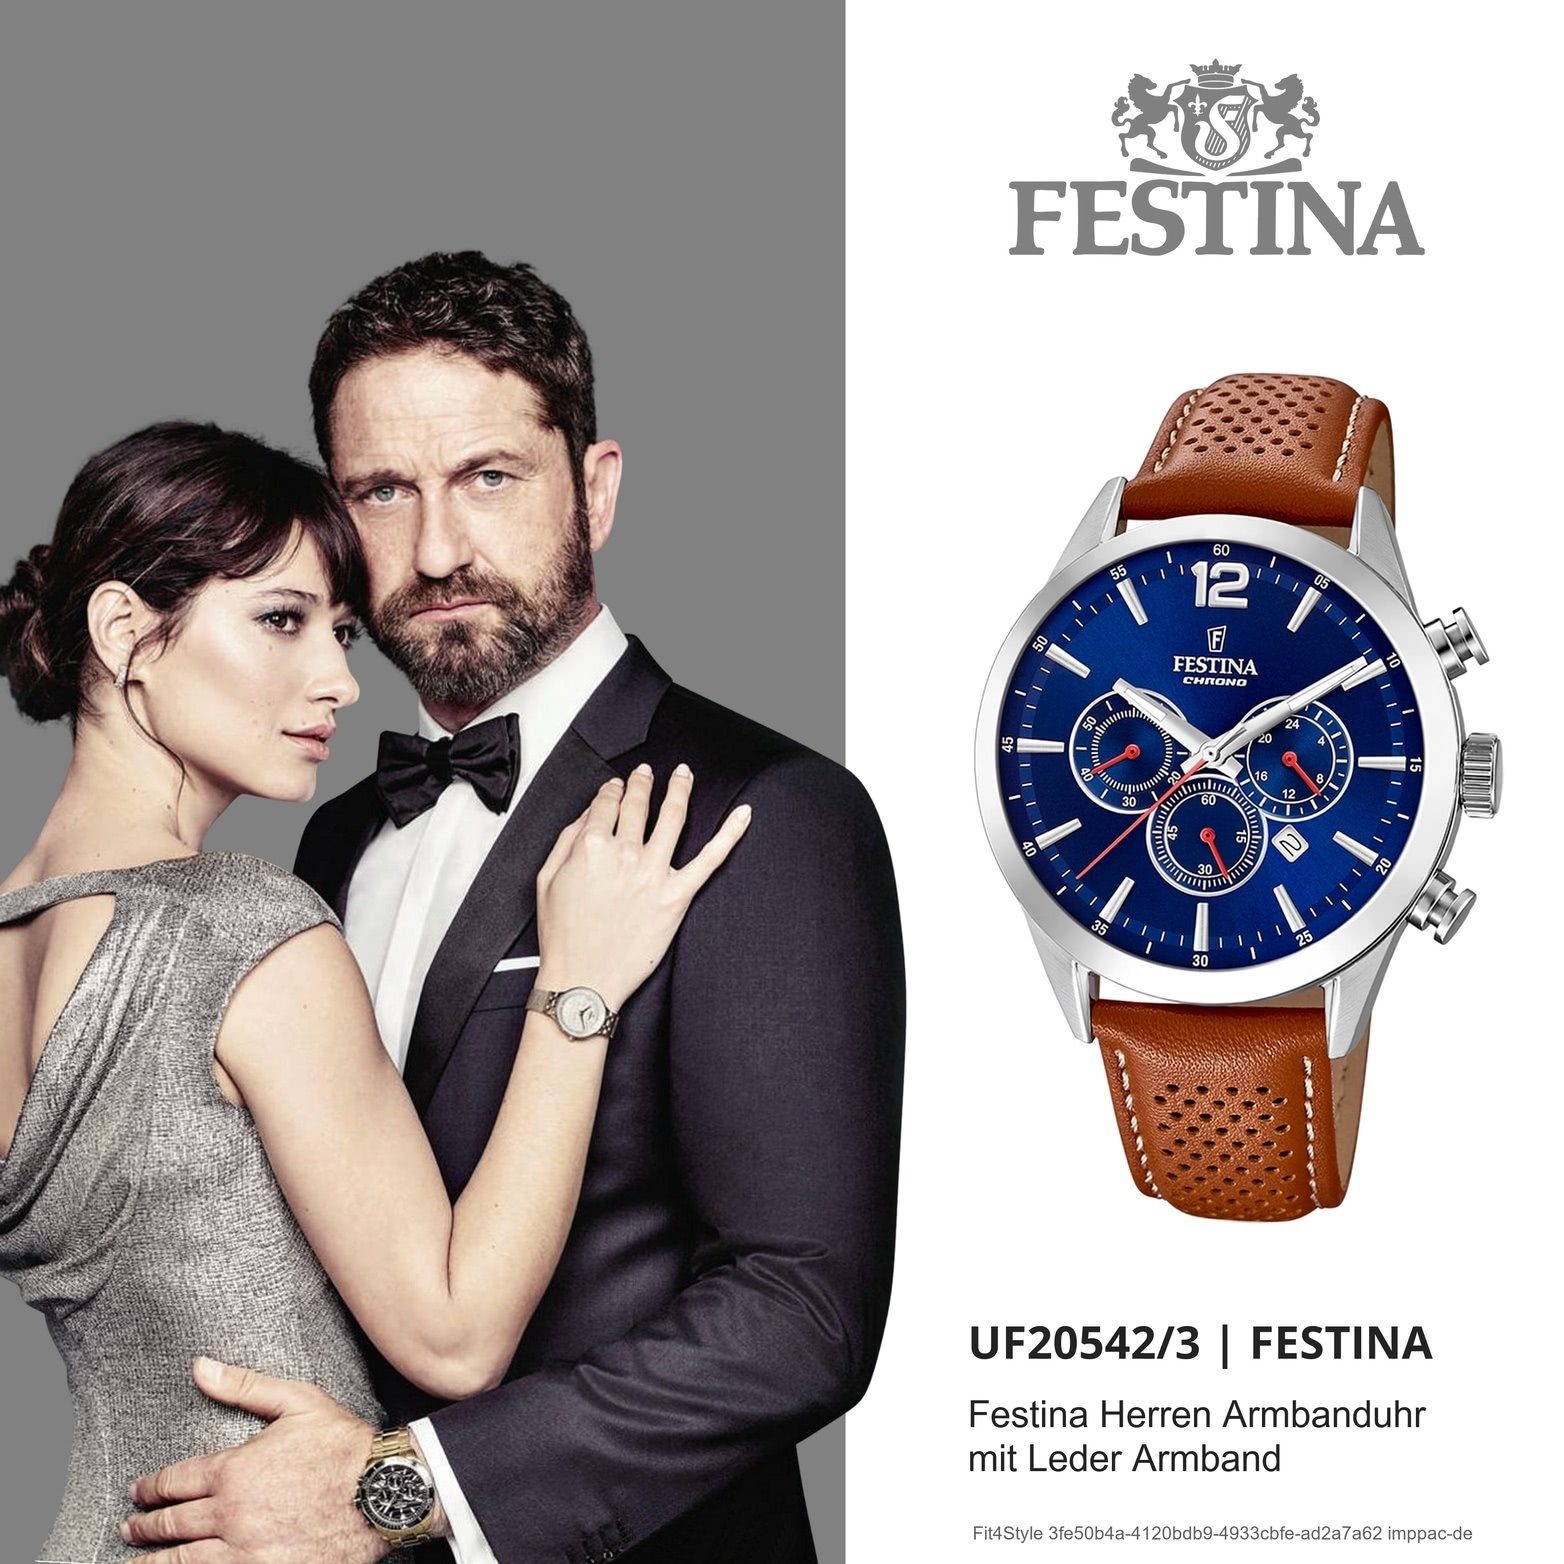 F20542/3, Festina Chronograph Festina Herren groß Uhr Lederarmband, Leder Fashion-S 44mm), rundes (ca. mit Gehäuse, Herrenuhr